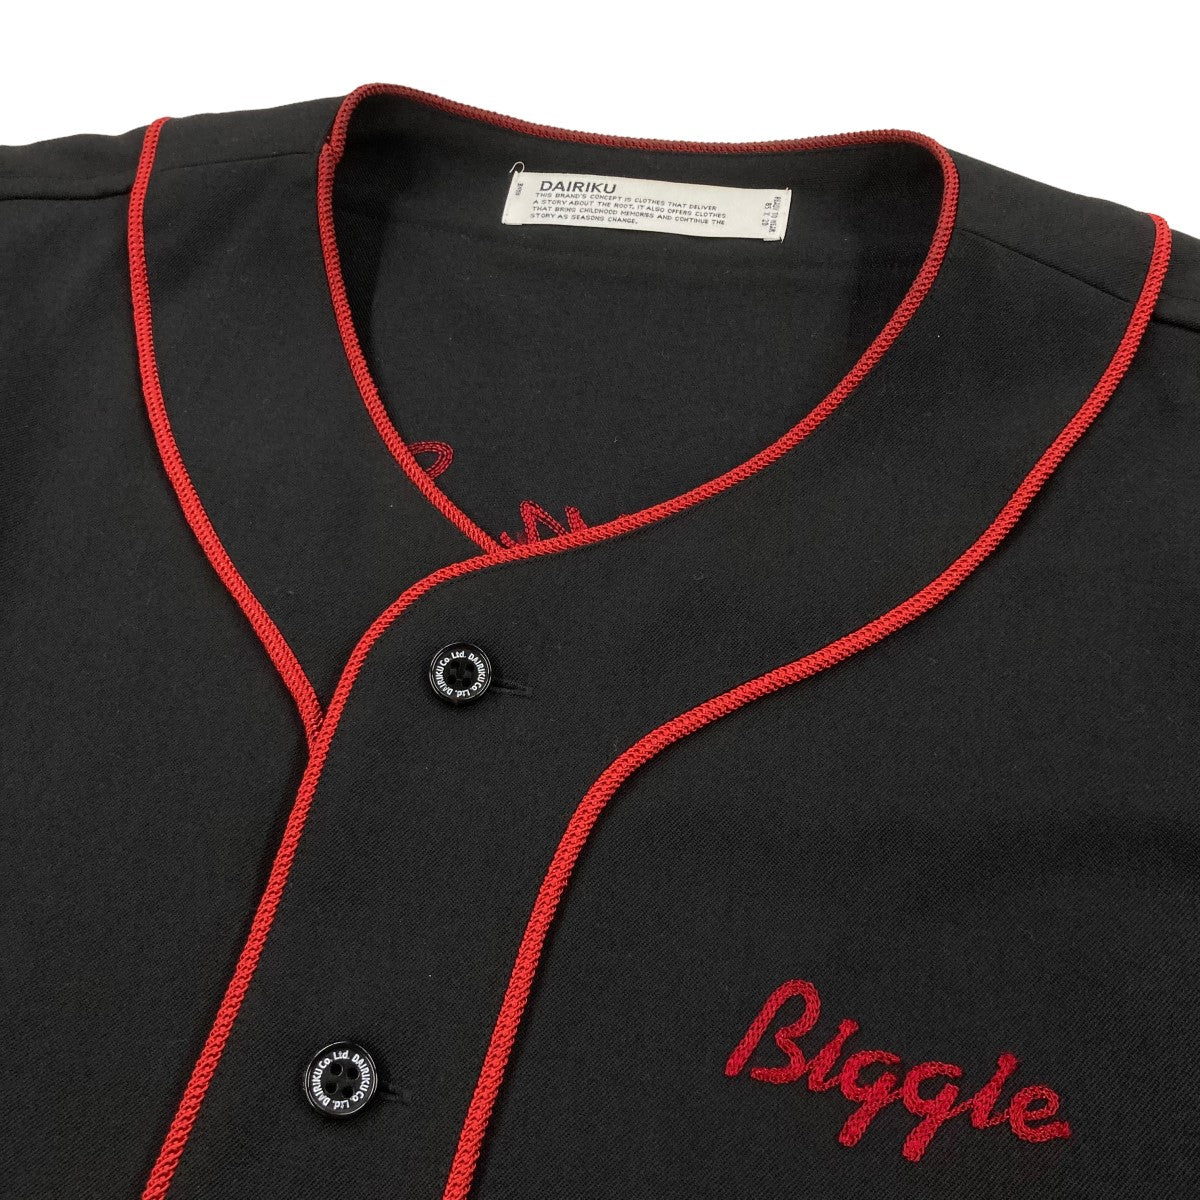 DAIRIKU(ダイリク) 19AWBiggie XL Baseball Shirtベースボールシャツ19AW S 3